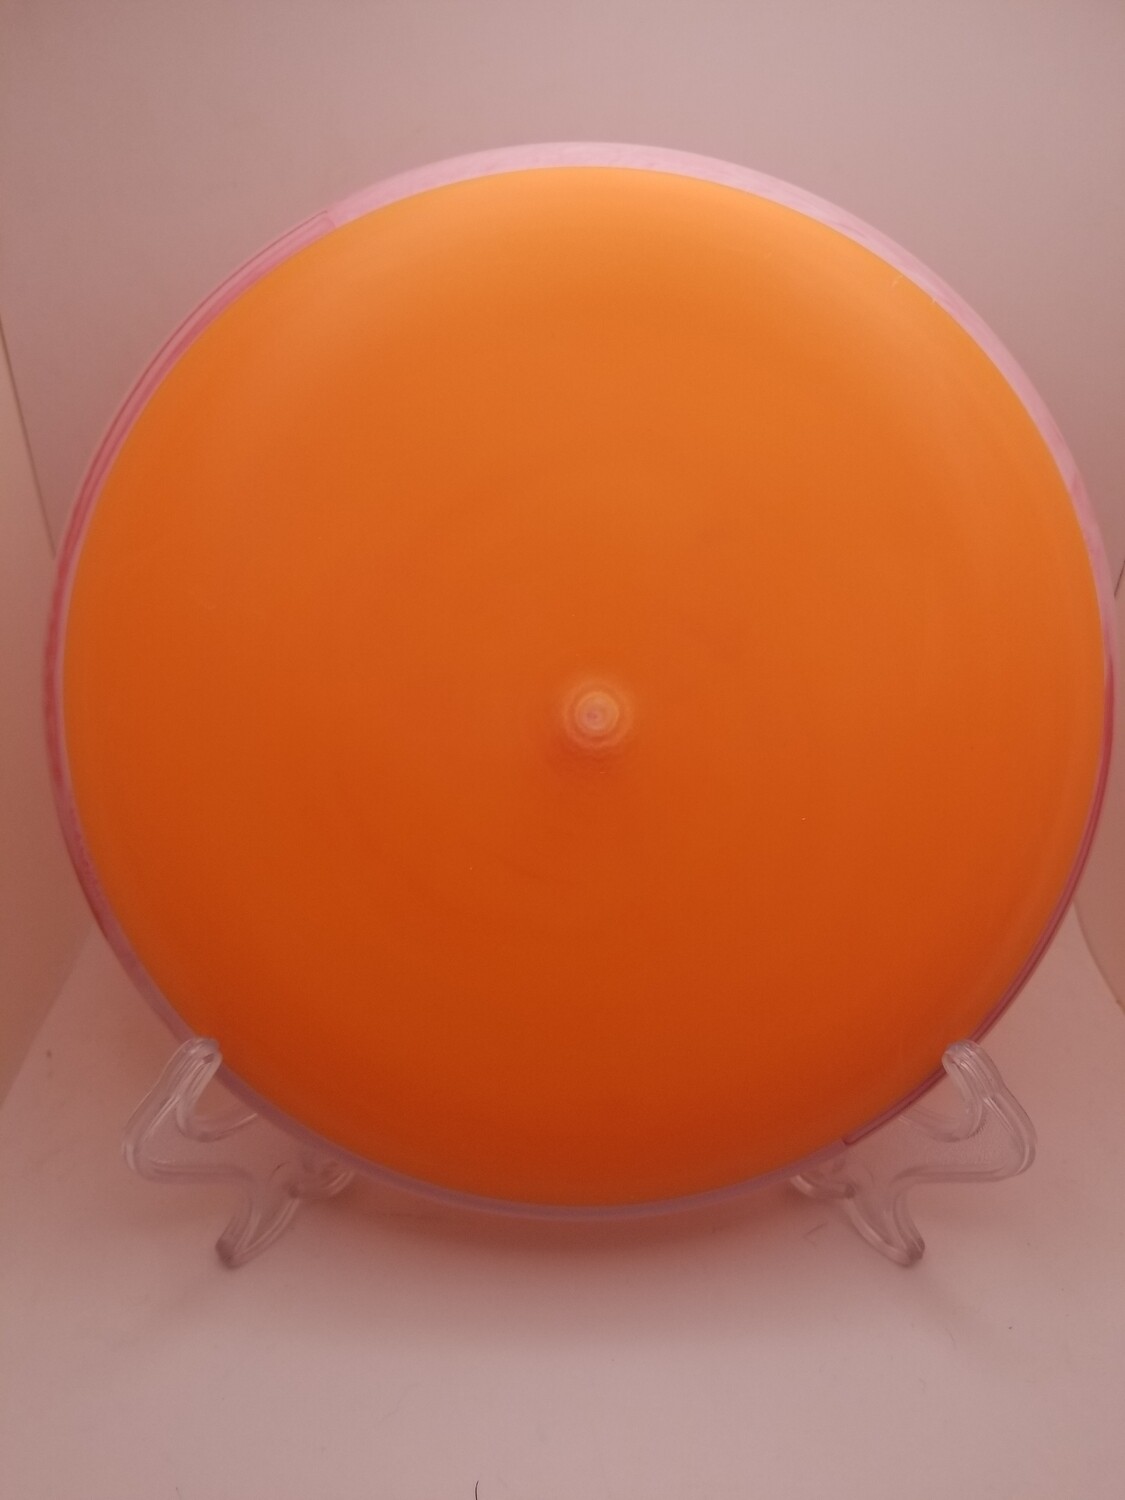 Axiom Discs- Simon Line - Electron Pixel Soft- Blank Orange with Pink Rim 172g.